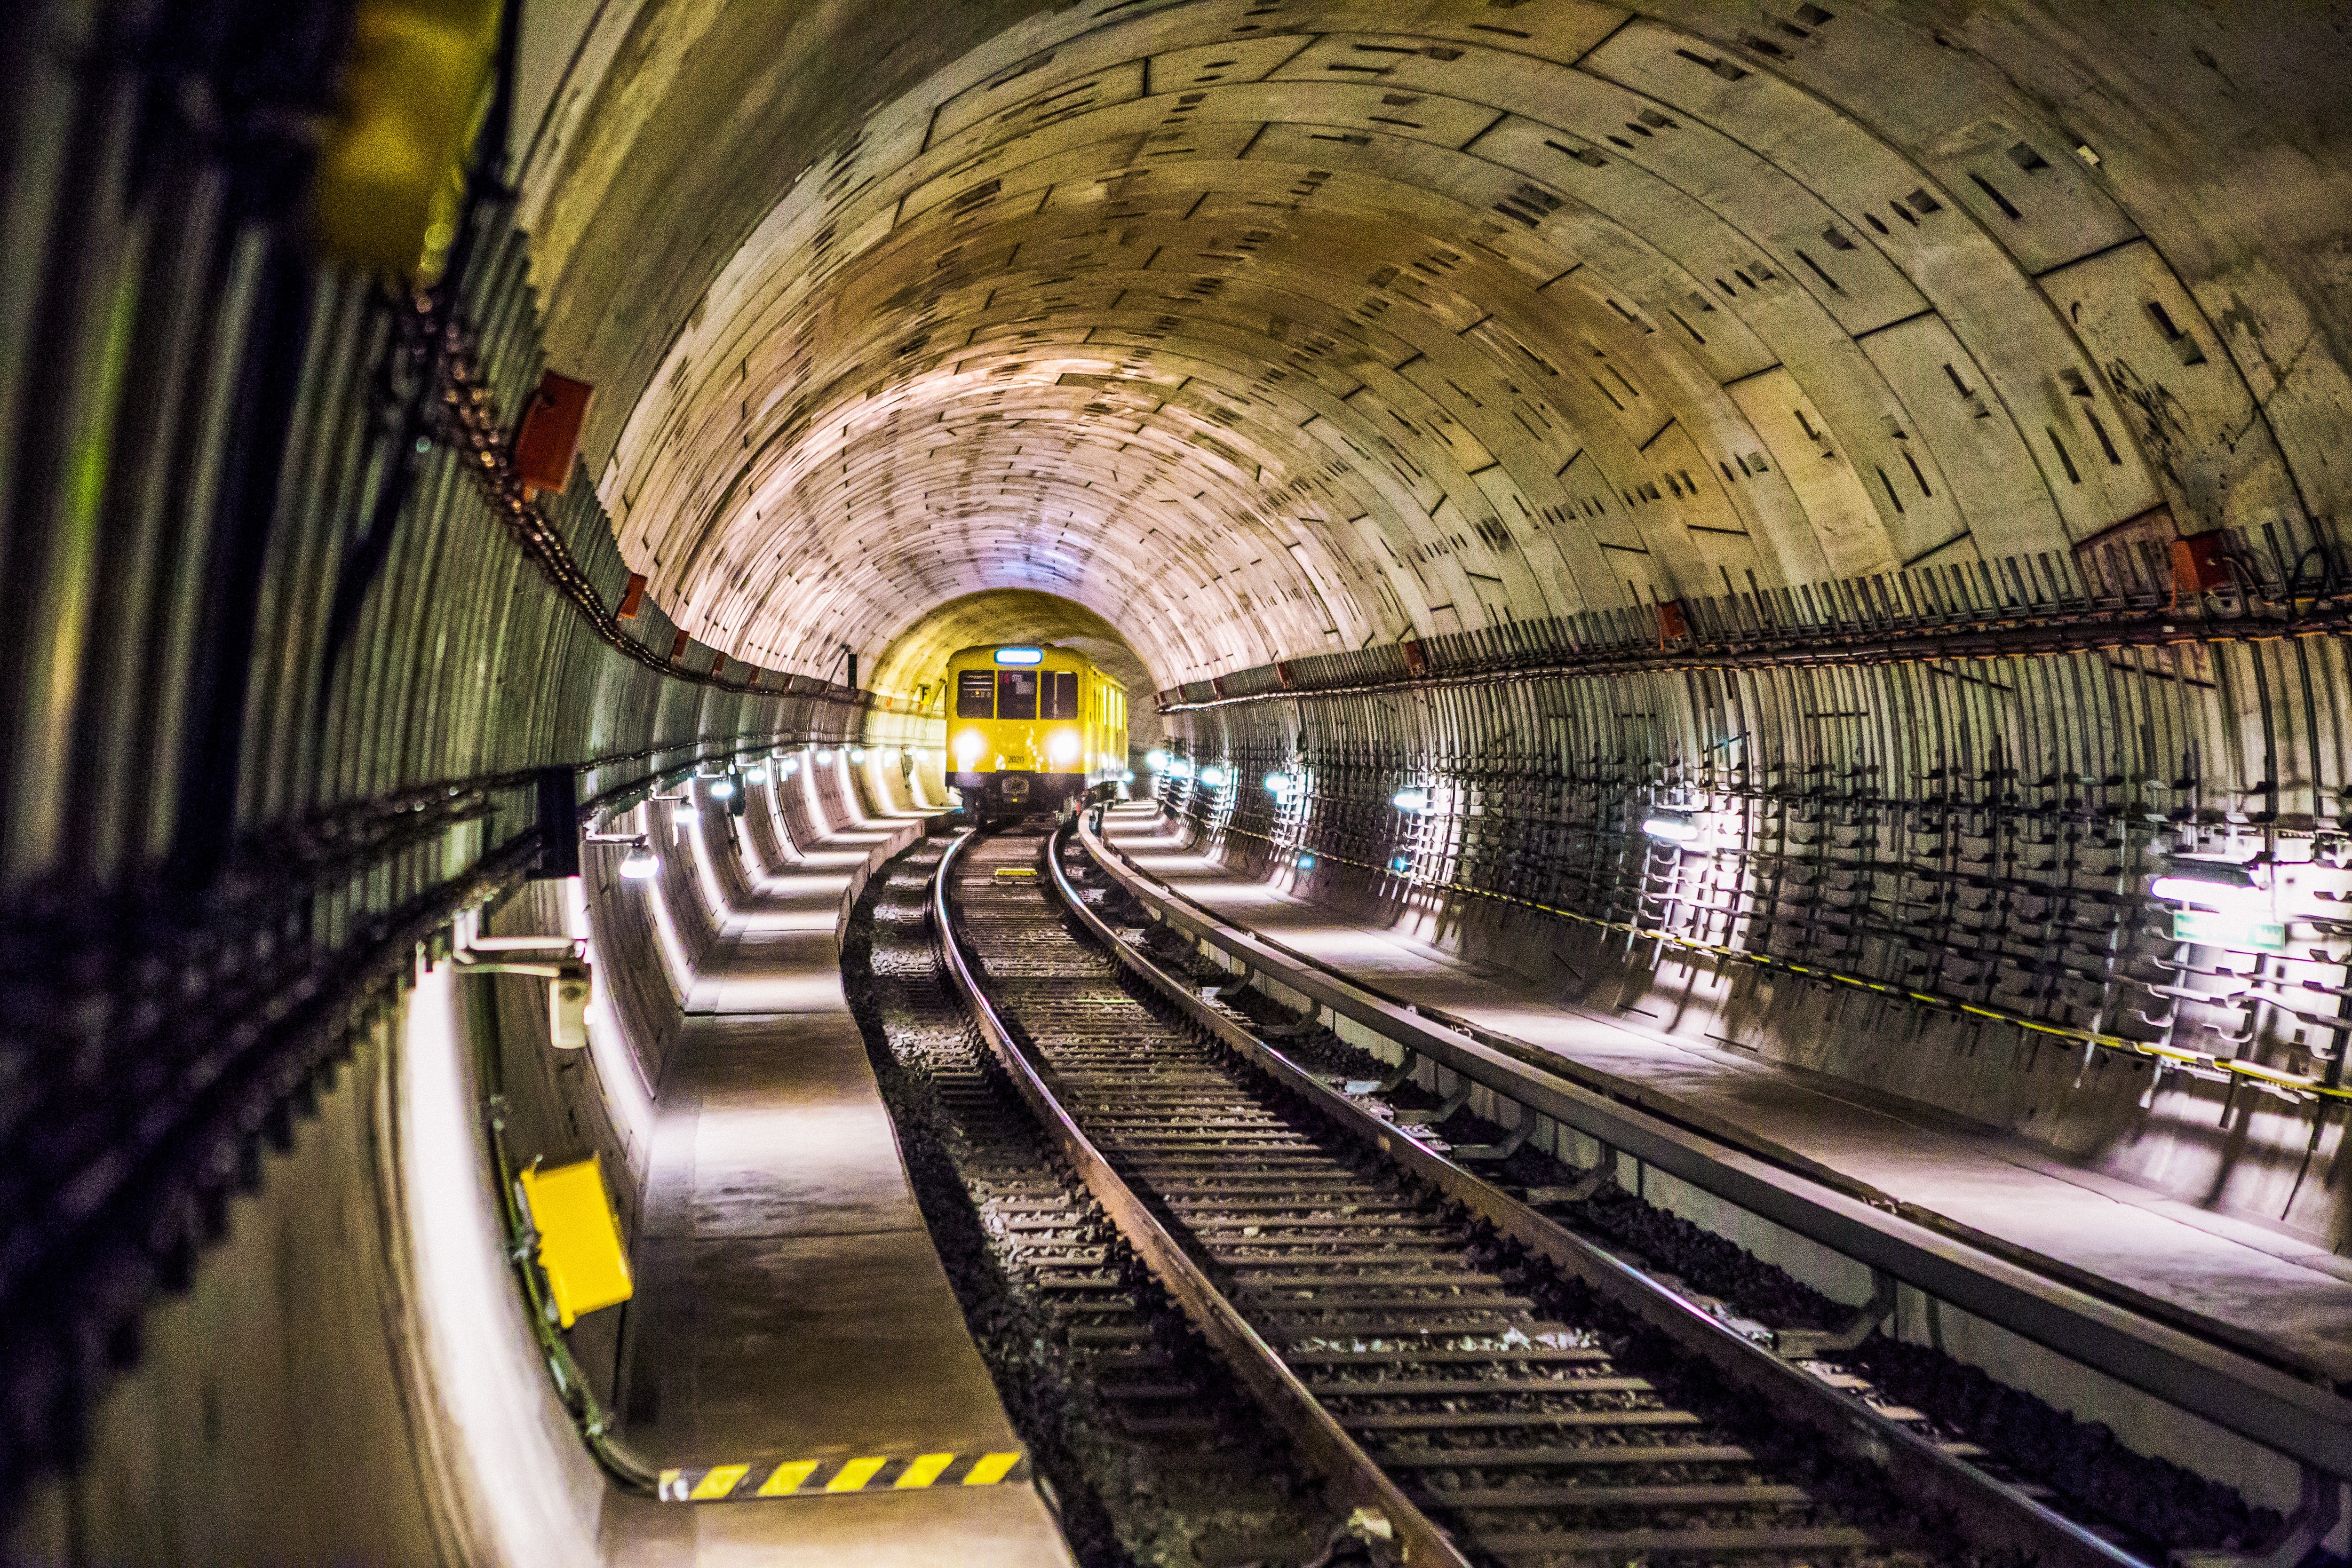 Einblick in einen U-Bahn-Tunnel mit einer entgegenkommenden U Bahn in Berlin